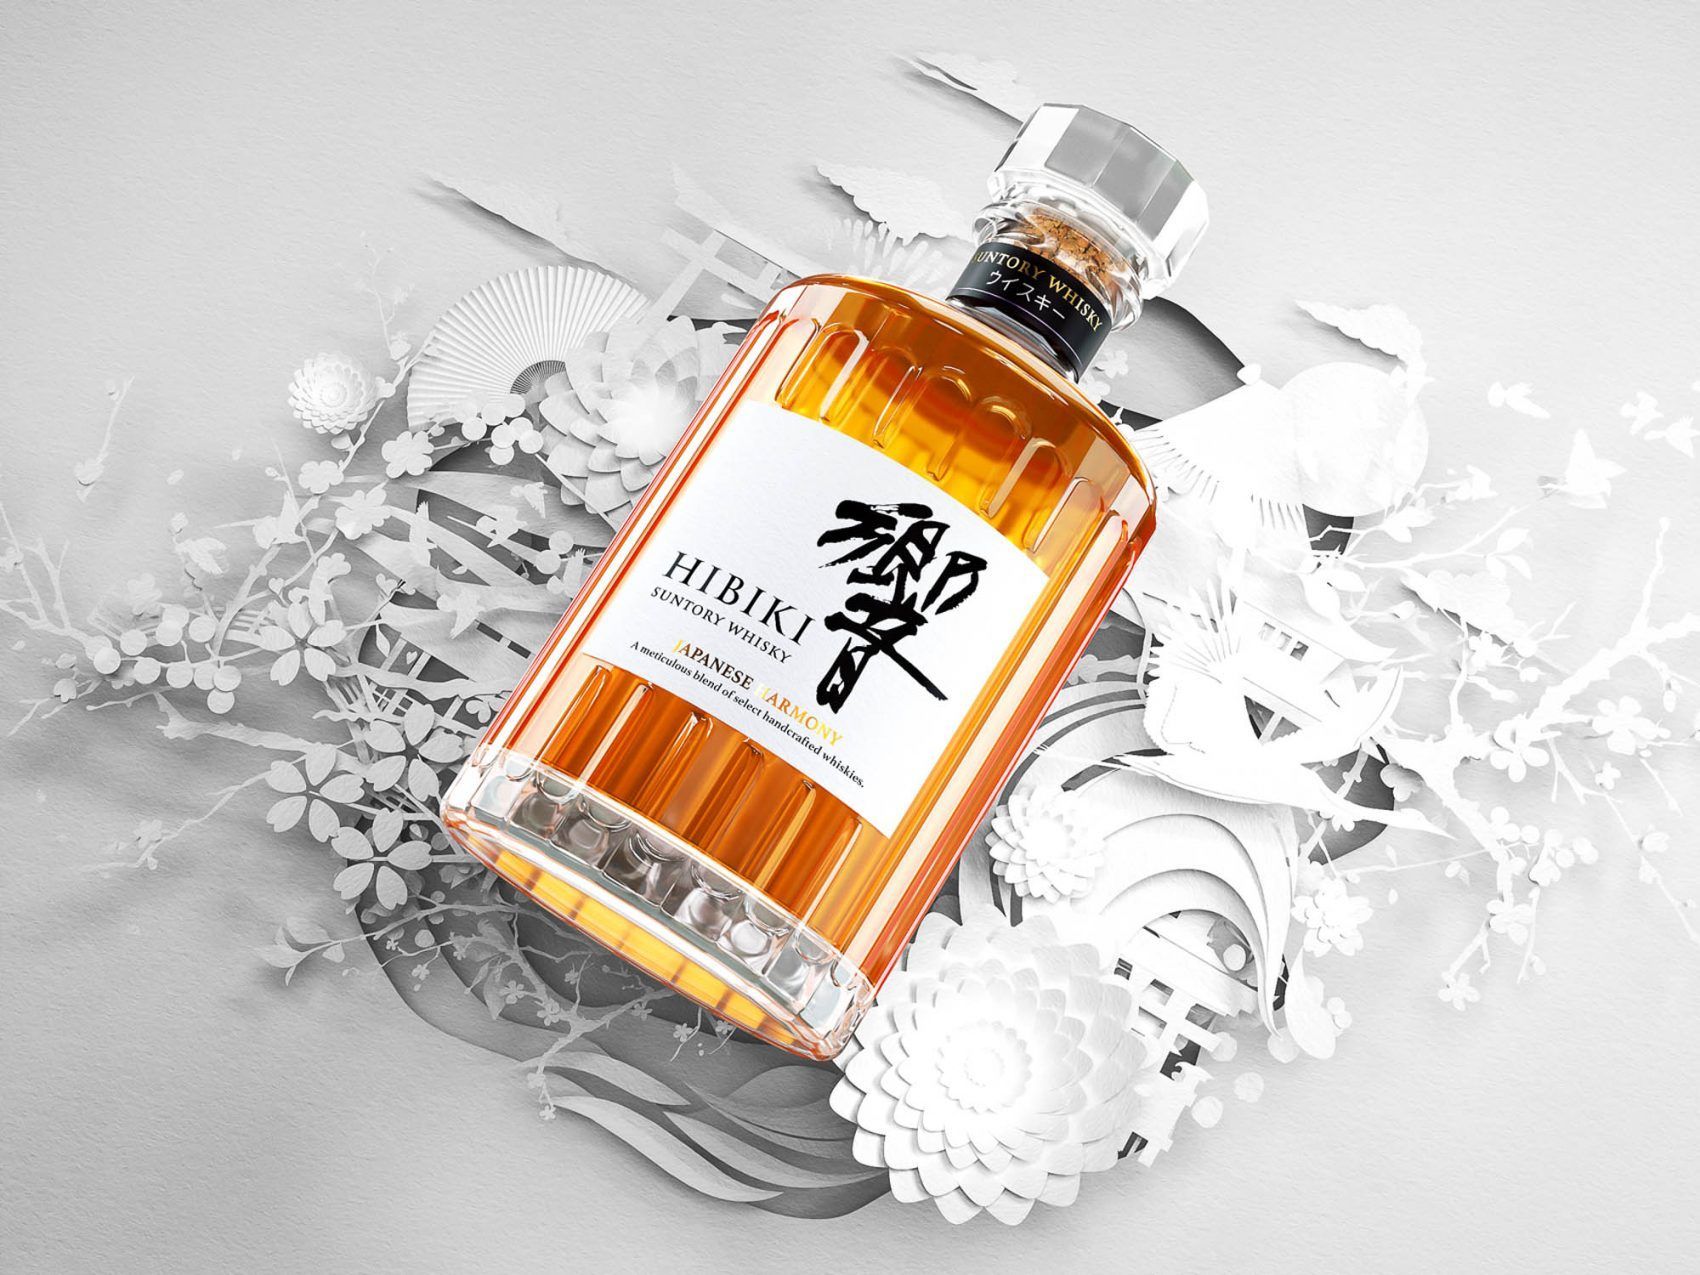 hibiki-japanese-harmony-blended-whisky-700ml-09-62da5fefad616.jpg